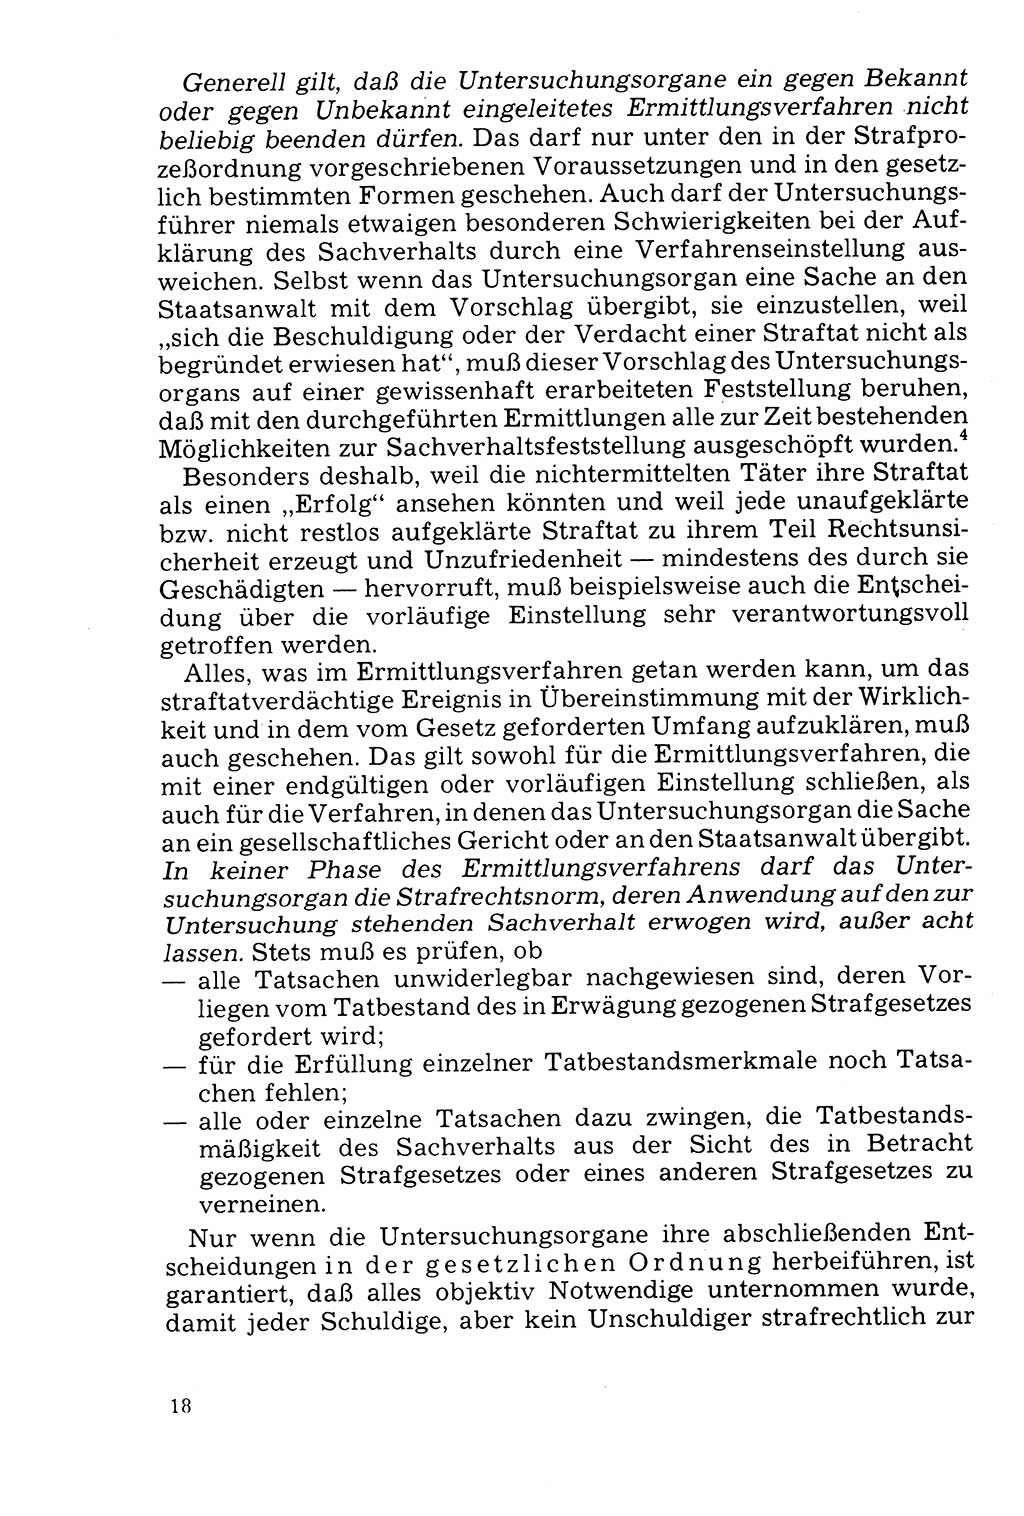 Der Abschluß des Ermittlungsverfahrens [Deutsche Demokratische Republik (DDR)] 1978, Seite 18 (Abschl. EV DDR 1978, S. 18)